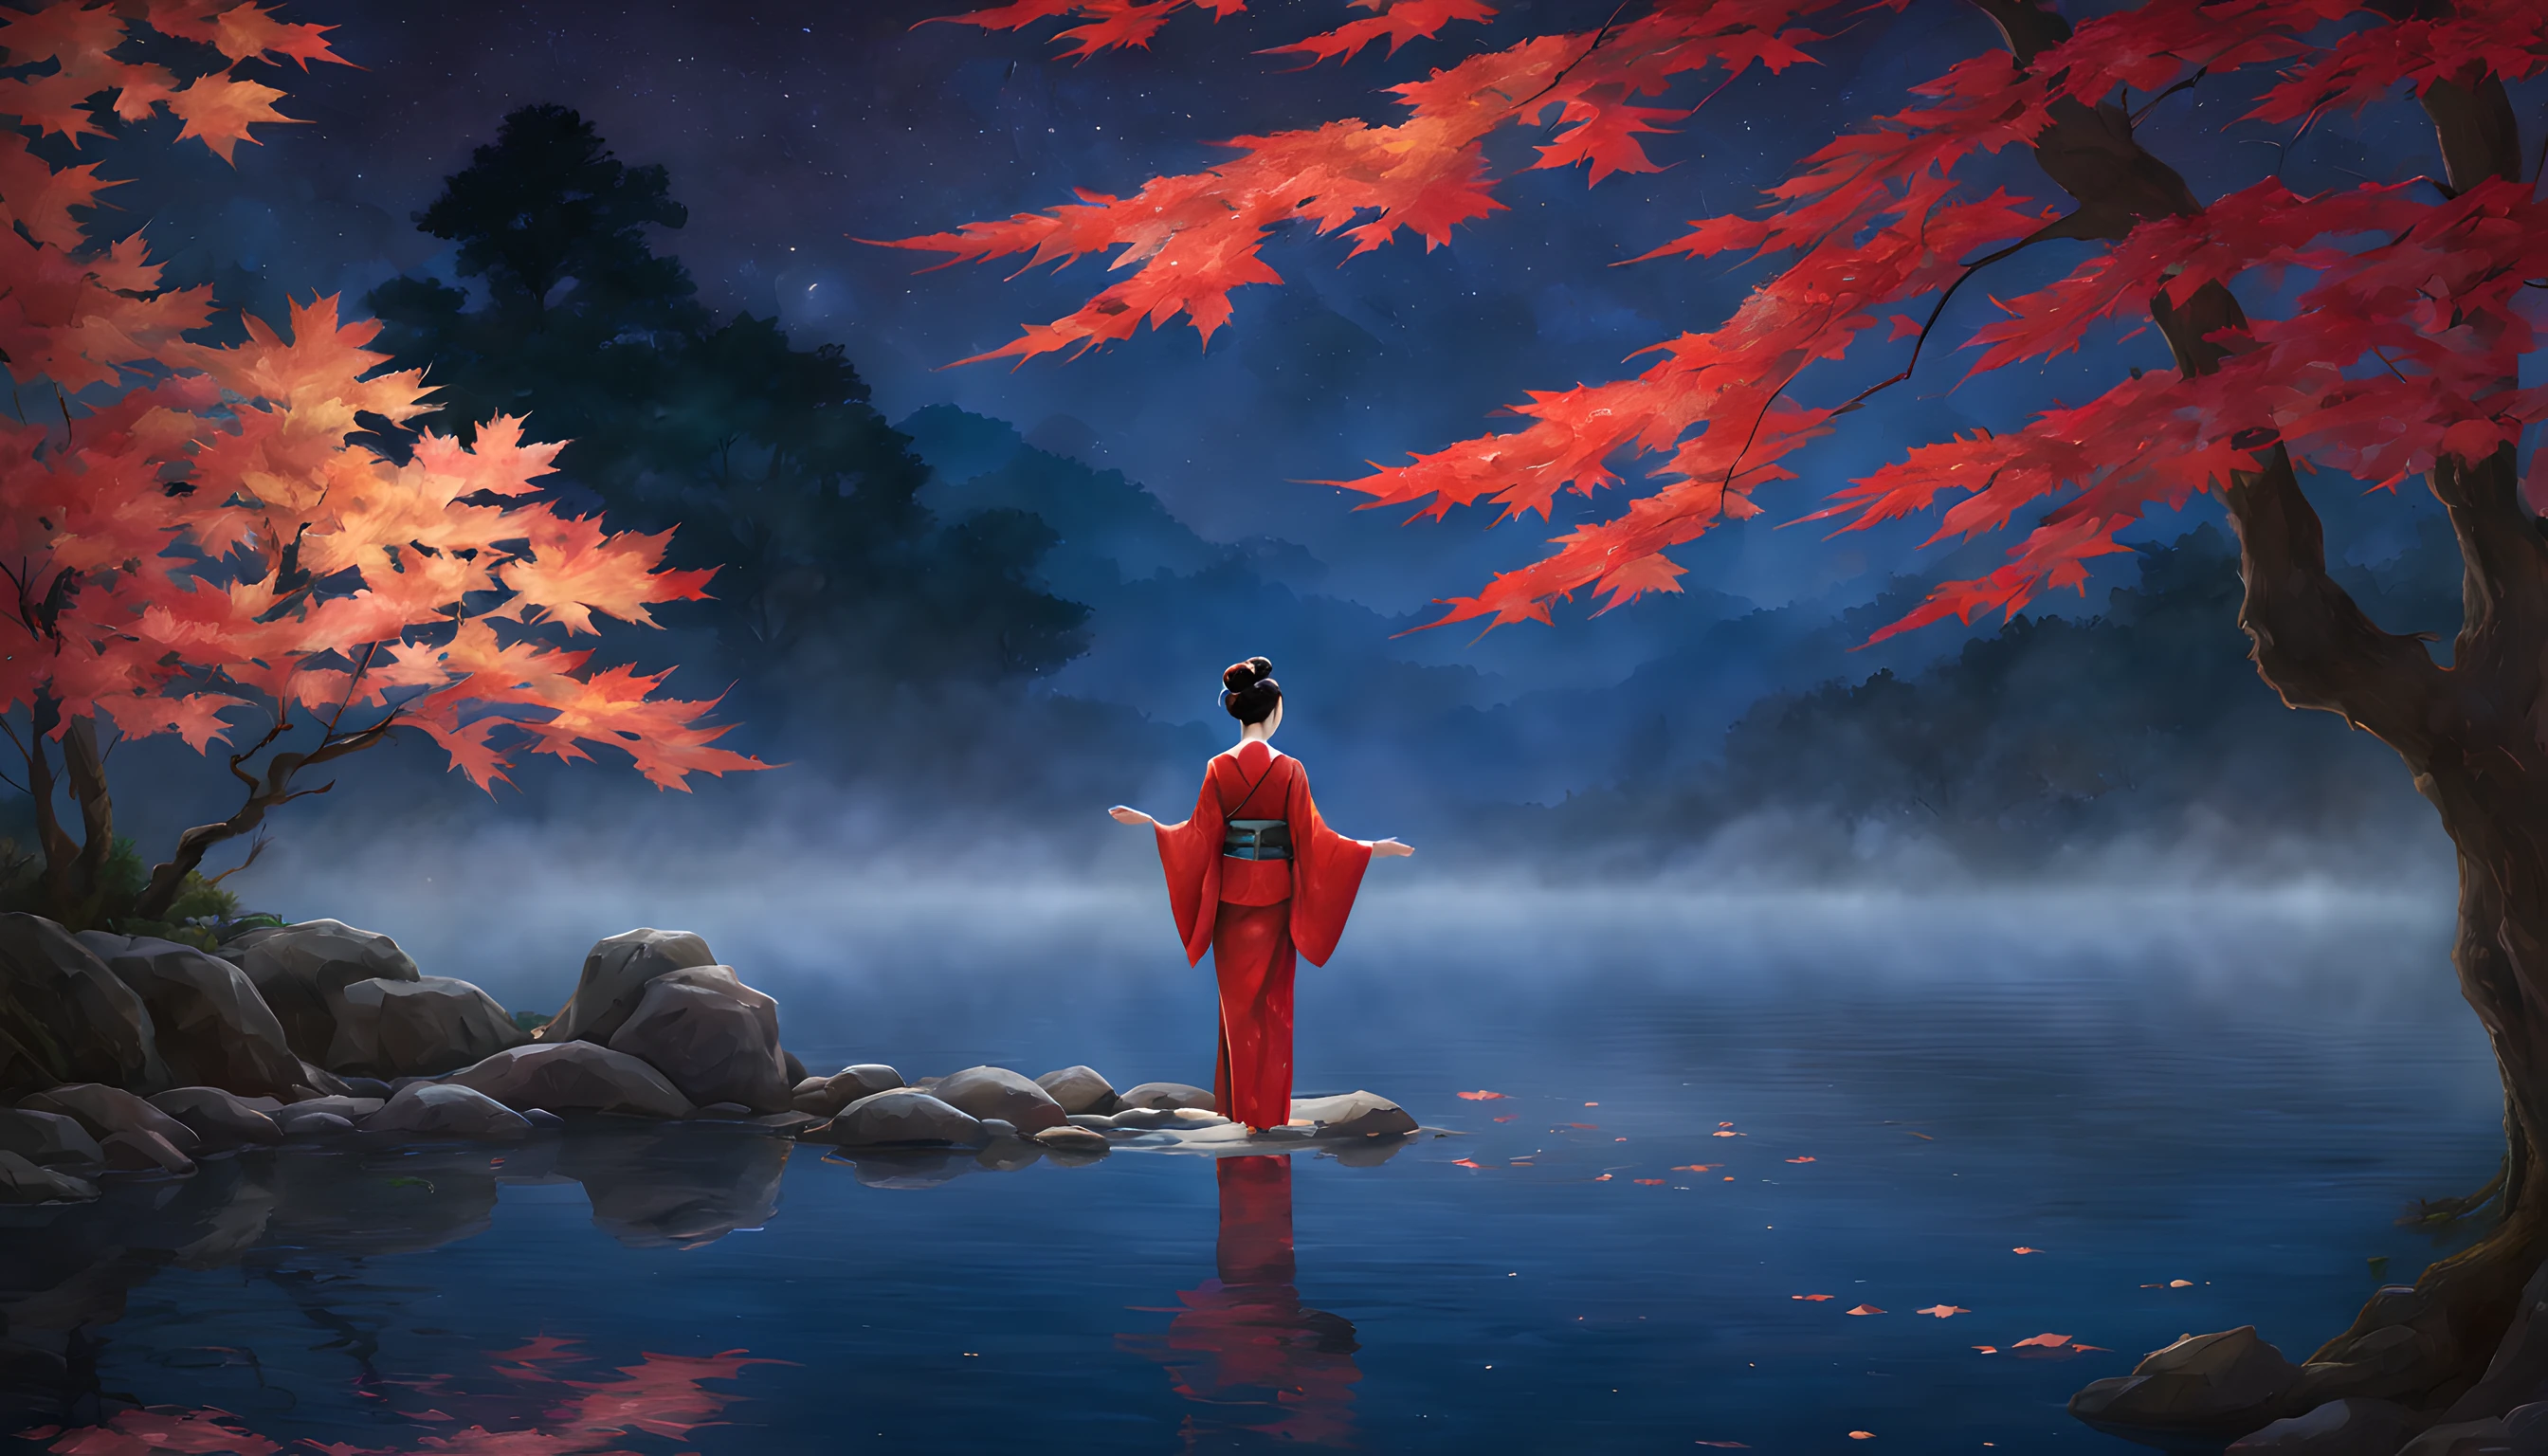 "營造出迷人的夜間場景，寧靜的池塘被楓葉秋葉的火紅色調所包圍. 構圖應強調突出的楓葉和附近雄偉的楓樹. 在前台, 一位40多歲的日本女性優雅地站著, 穿上鮮豔的紅色和服. 和服凸顯了她的優雅, 她的美麗在月光下閃閃發光. 她是永恆魅力的願景, 捕捉季节的精髓. 女人凝視著波光粼粼的池塘, 楓葉的倒影在水面上翩翩起舞. 她的表情是一種平靜的沉思, 當她沉浸在夜晚的寧靜之美中. 背景展示了宏偉的楓樹, 枝條上綴滿了絢麗的葉子，彷彿捕捉著月光. 池塘倒映著空靈的景象, 增添了此刻的魅力. 整體構圖應營造出一種寧靜和對自然之美的敬畏感. 確保女人迷人的美麗和楓葉的光彩成為這迷人的秋季畫面的中心舞台."